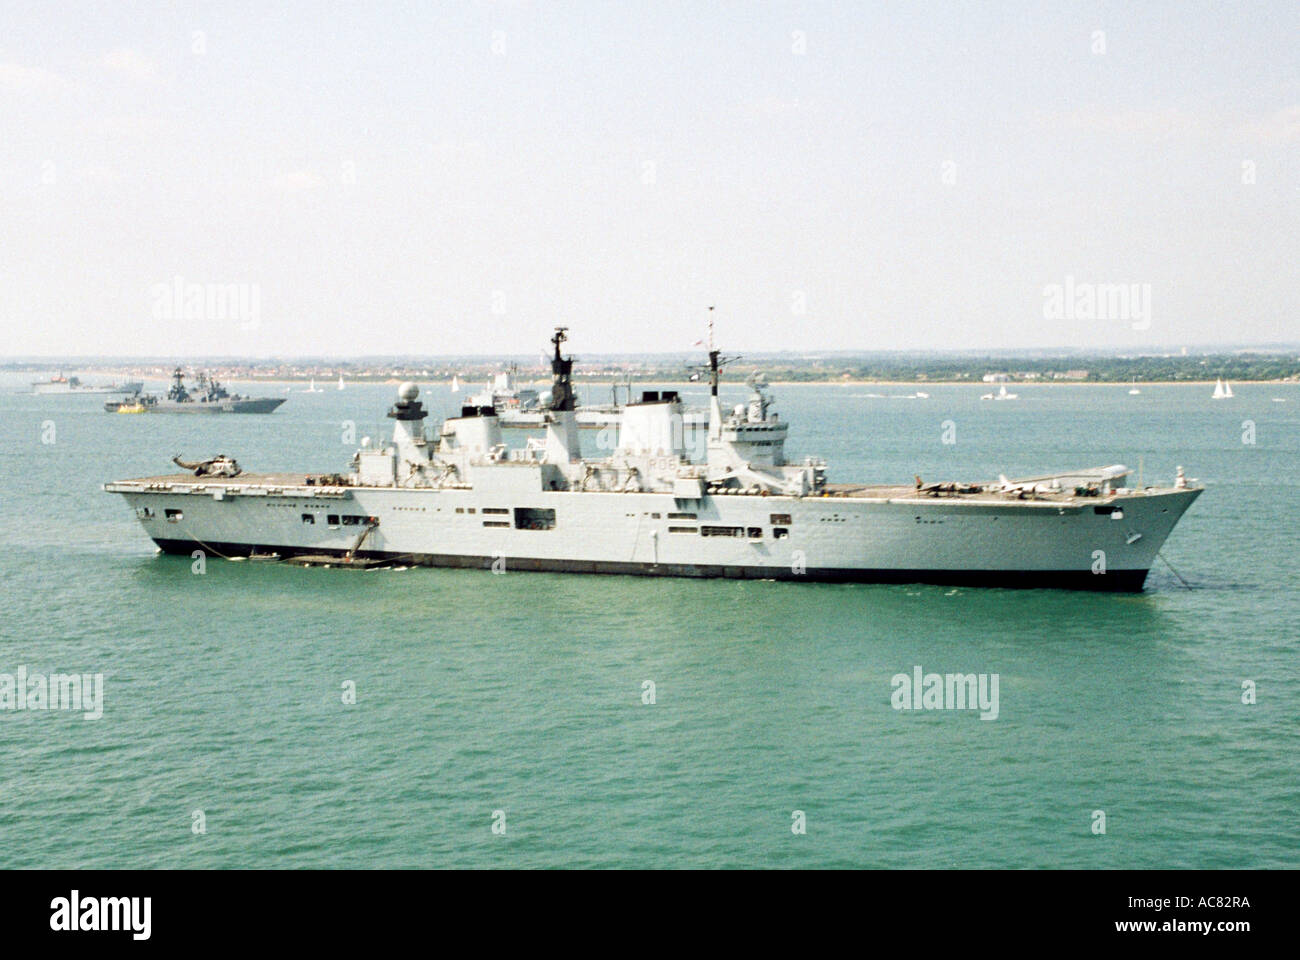 H.M.S illustre, ancrée dans le Solent à l'extérieur du port de Portsmouth, au cours d'IFOS 2005. Banque D'Images